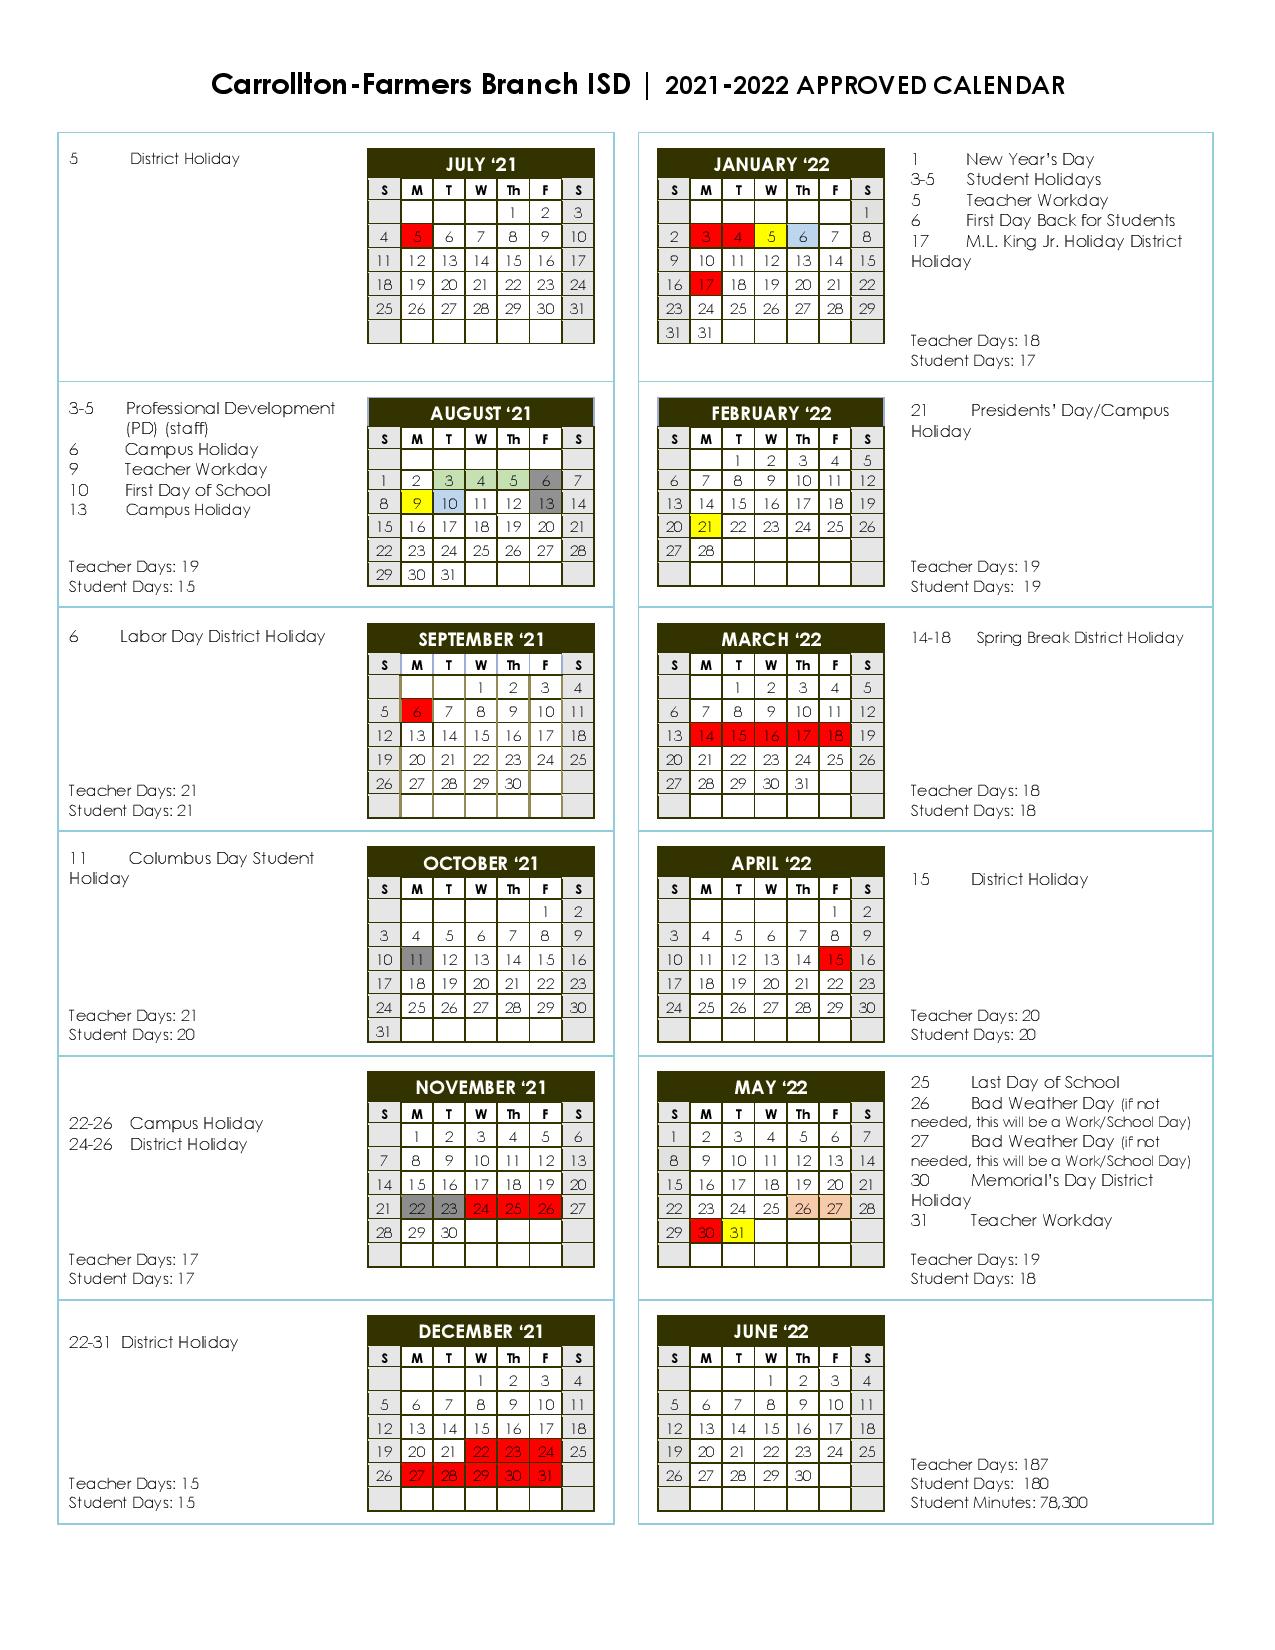 Cfbisd Calendar 2022 Carrollton-Farmers Branch Independent School Calendar 2021-2022